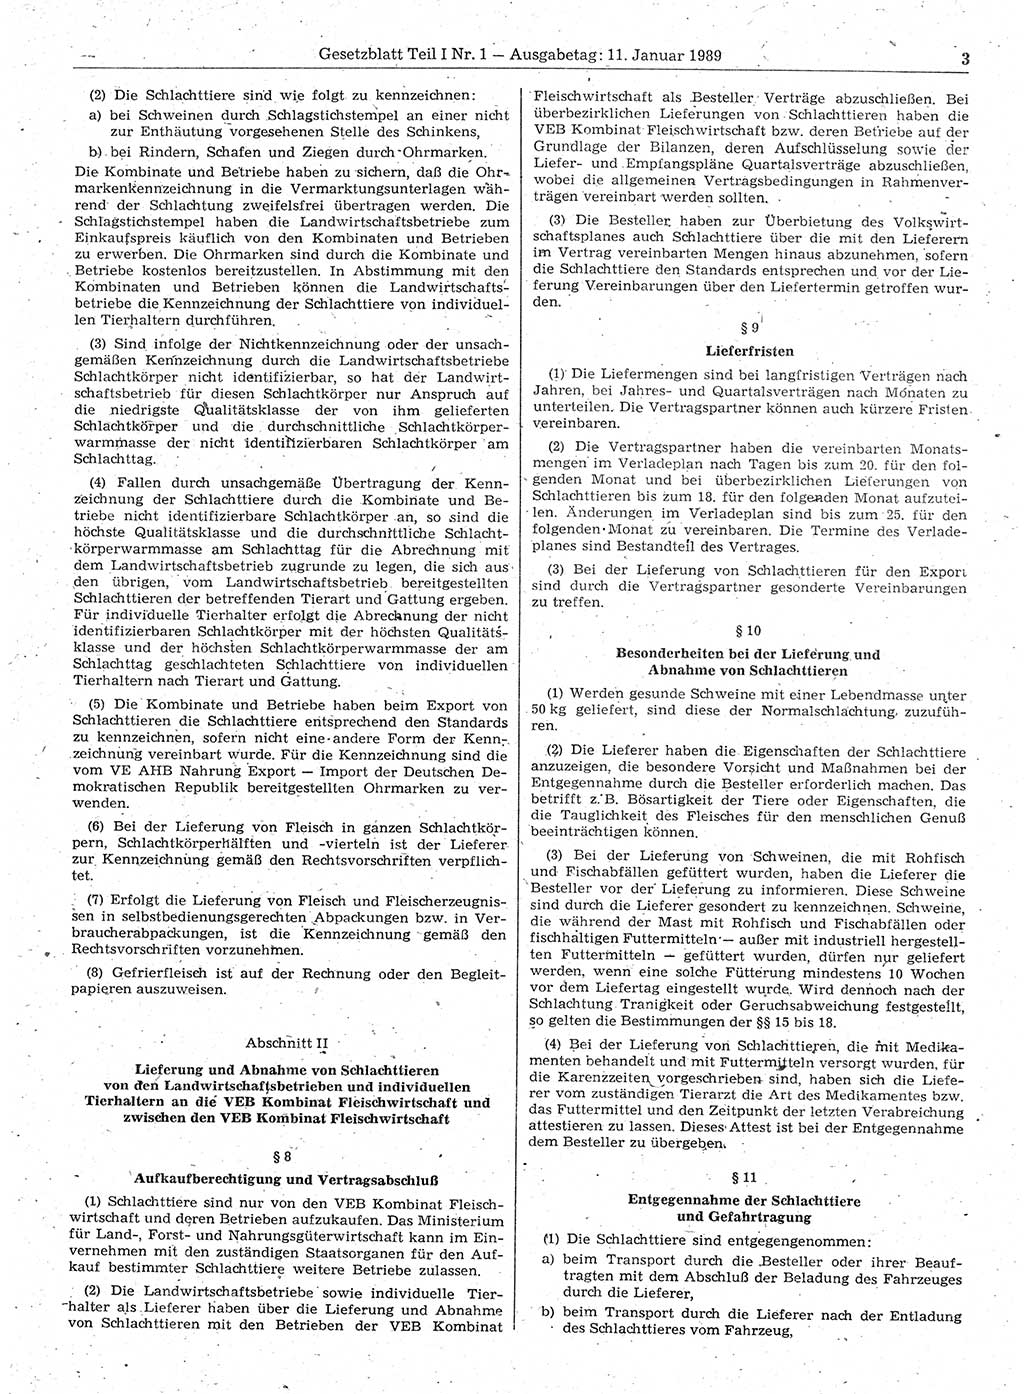 Gesetzblatt (GBl.) der Deutschen Demokratischen Republik (DDR) Teil Ⅰ 1989, Seite 3 (GBl. DDR Ⅰ 1989, S. 3)